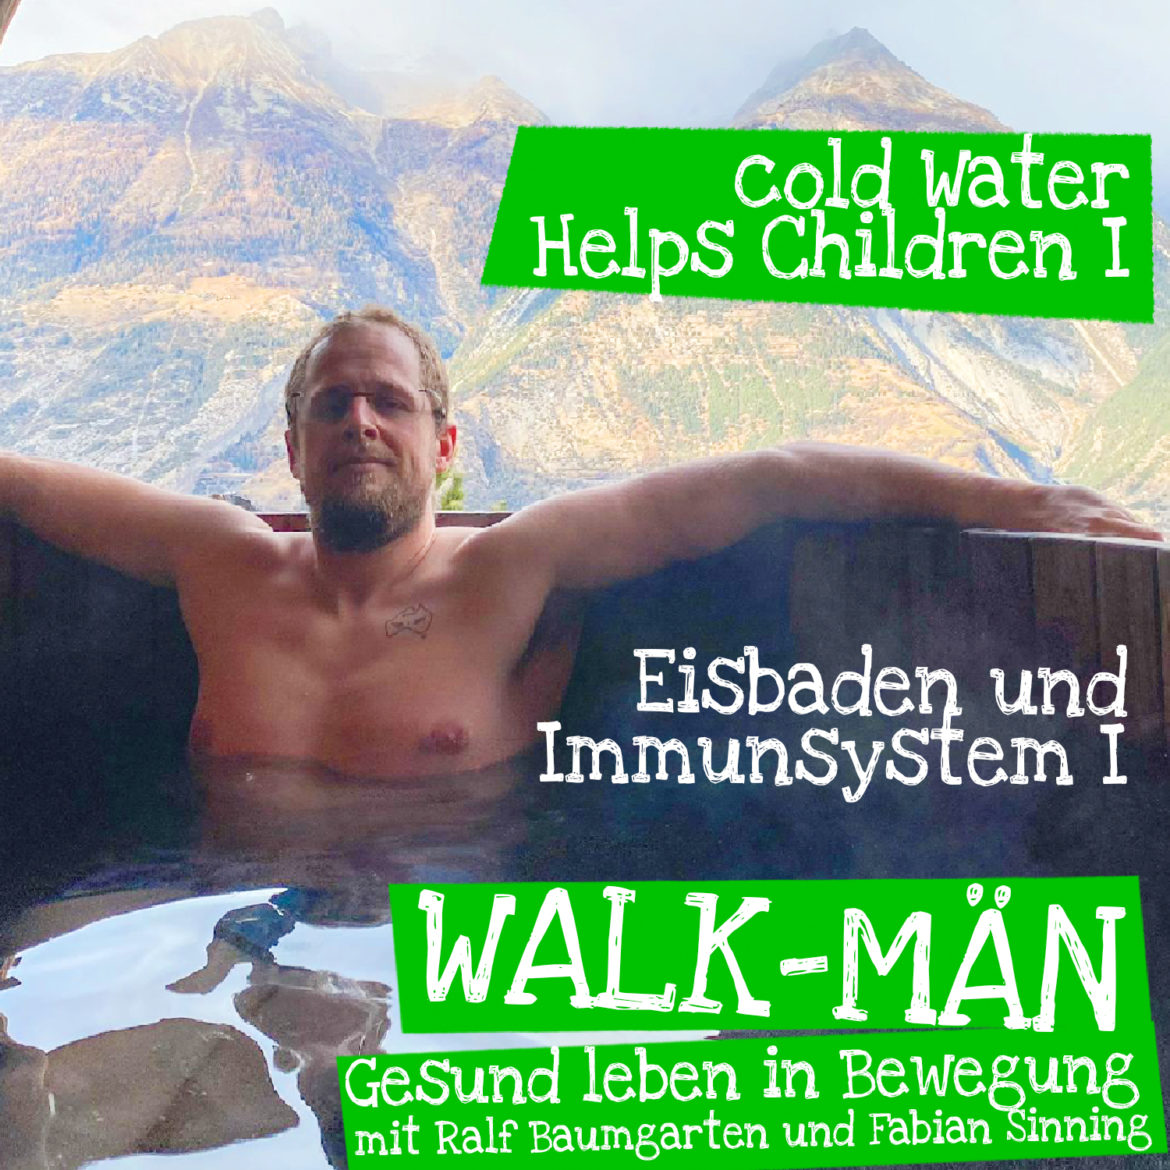 Walk-Män-Podcast 84. Immunsystem stärken / Cold Water Helps Children